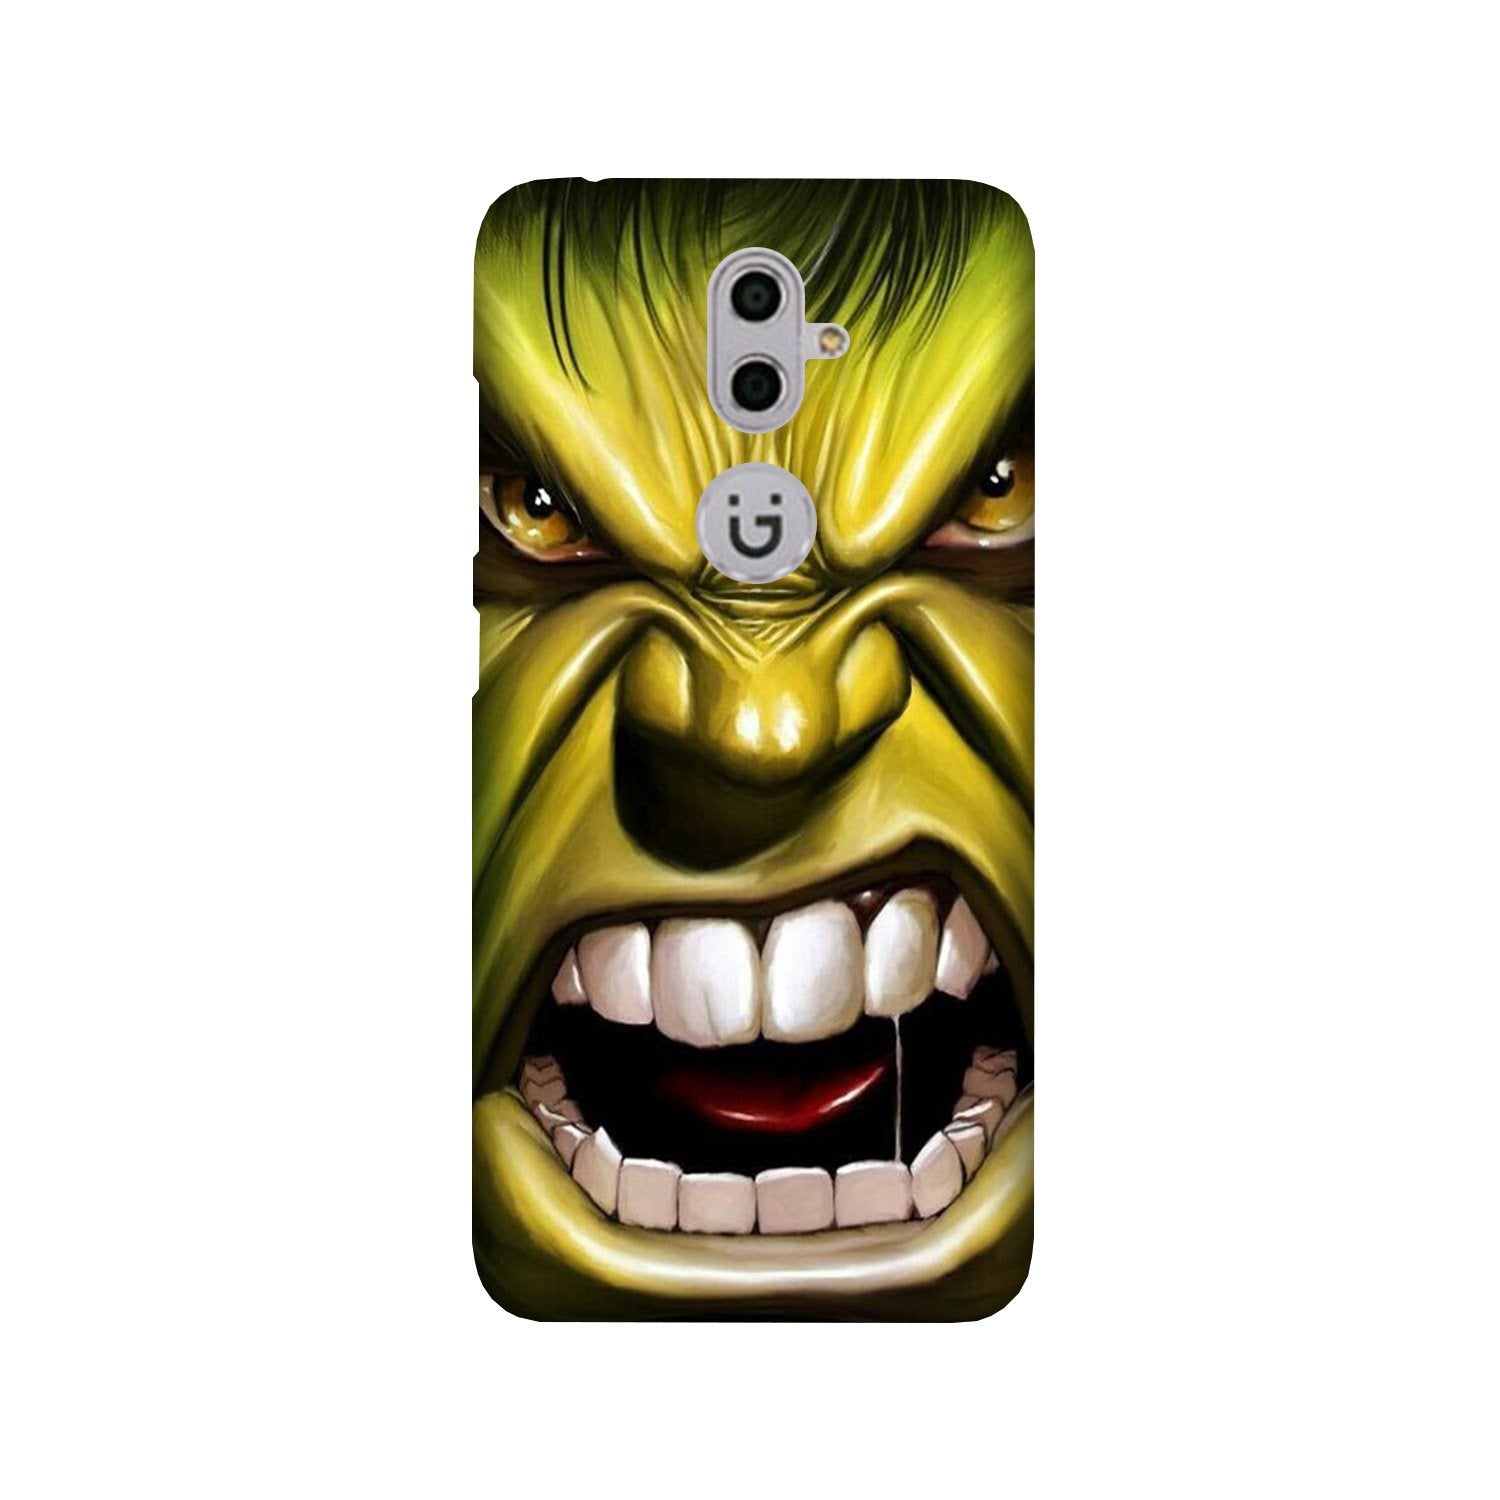 Hulk Superhero Case for Gionee S9(Design - 121)